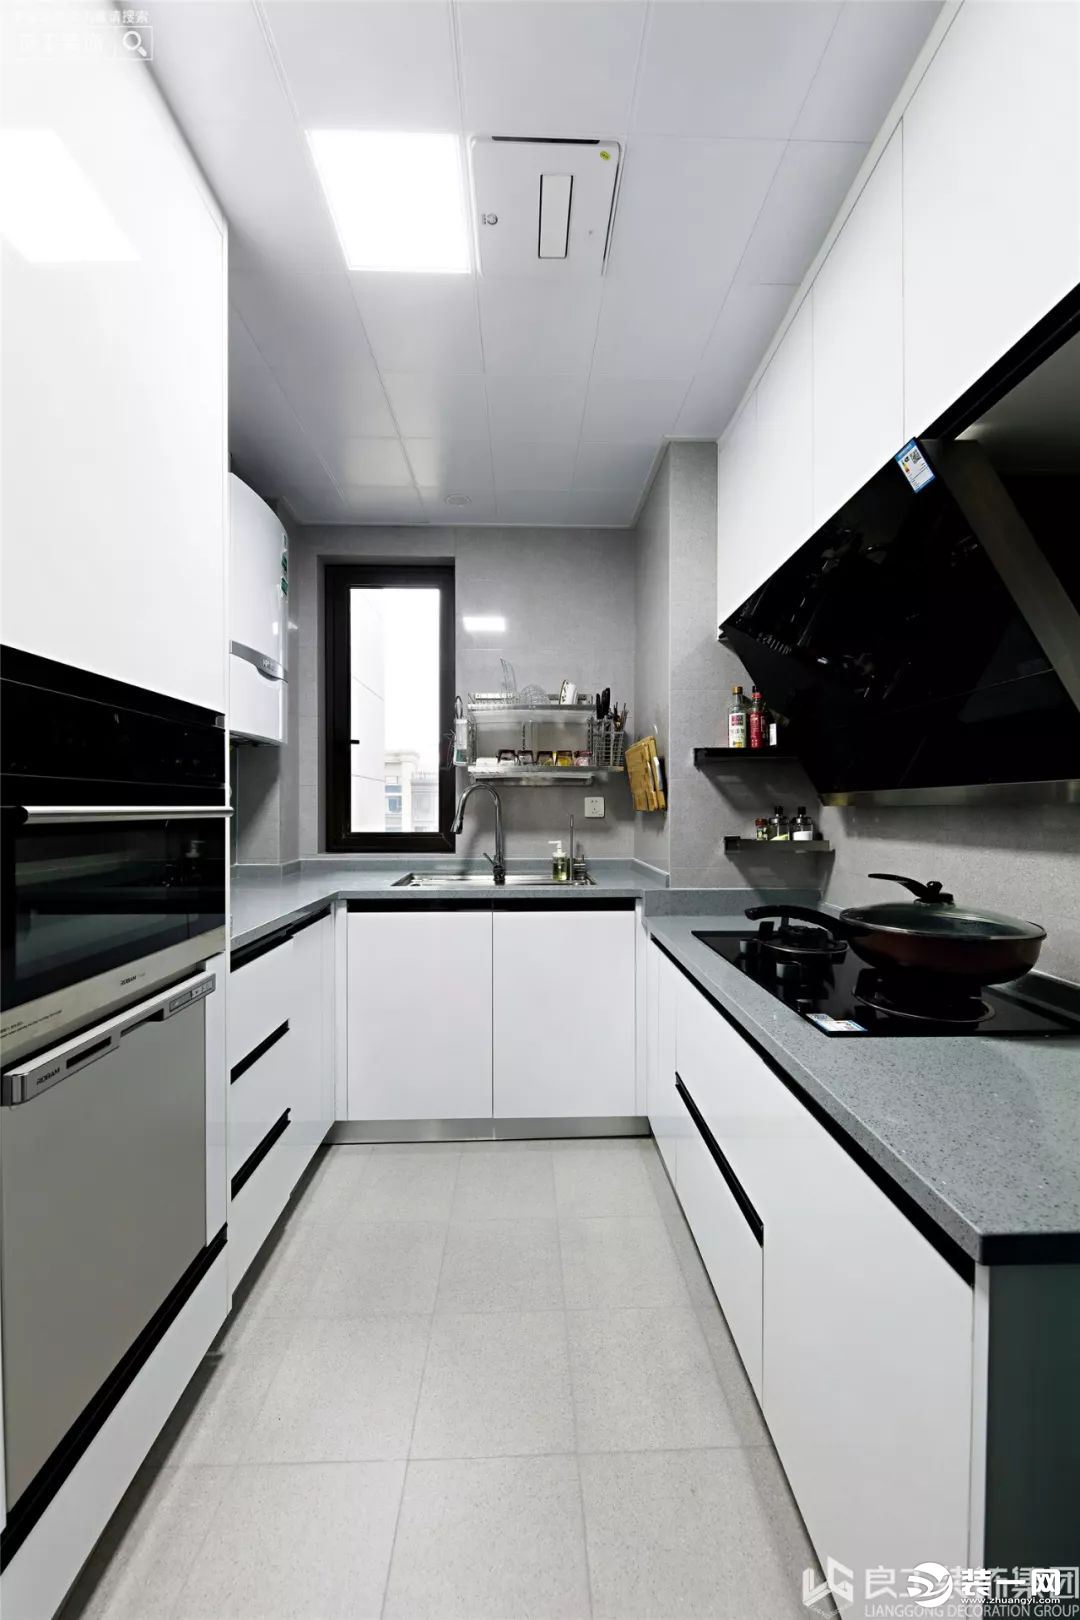 厨房是三扇玻璃移门的设计，打开的话厨房的敞开面积也会大大增加，拥有开放式厨房的视觉效果又避免了油烟